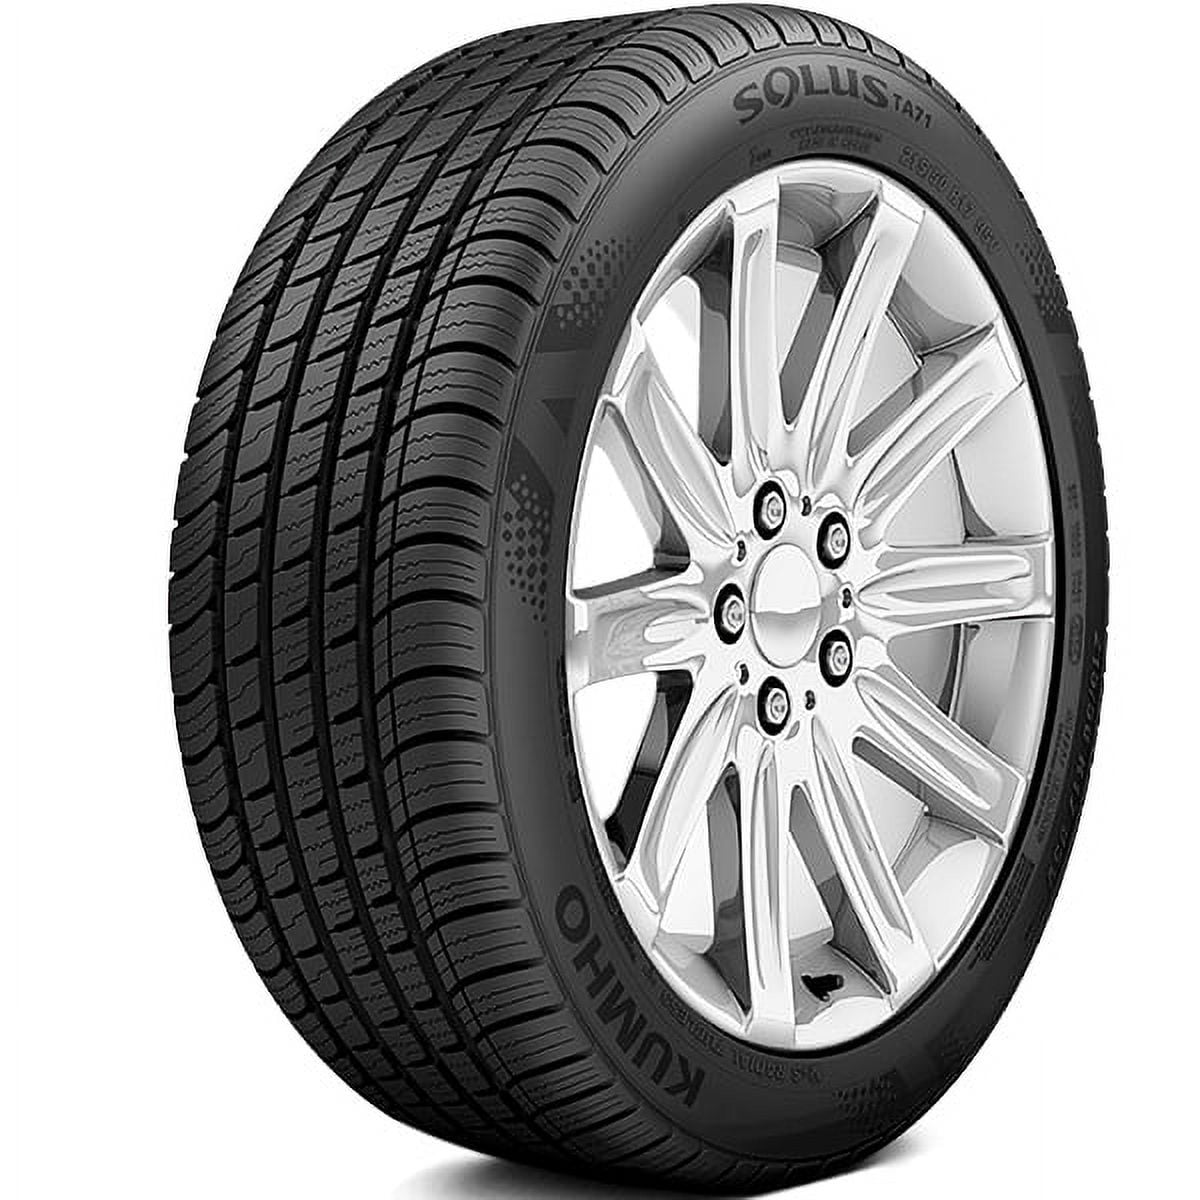 Kumho Solus 91V - TA71 205/55R16 All-Season Tire